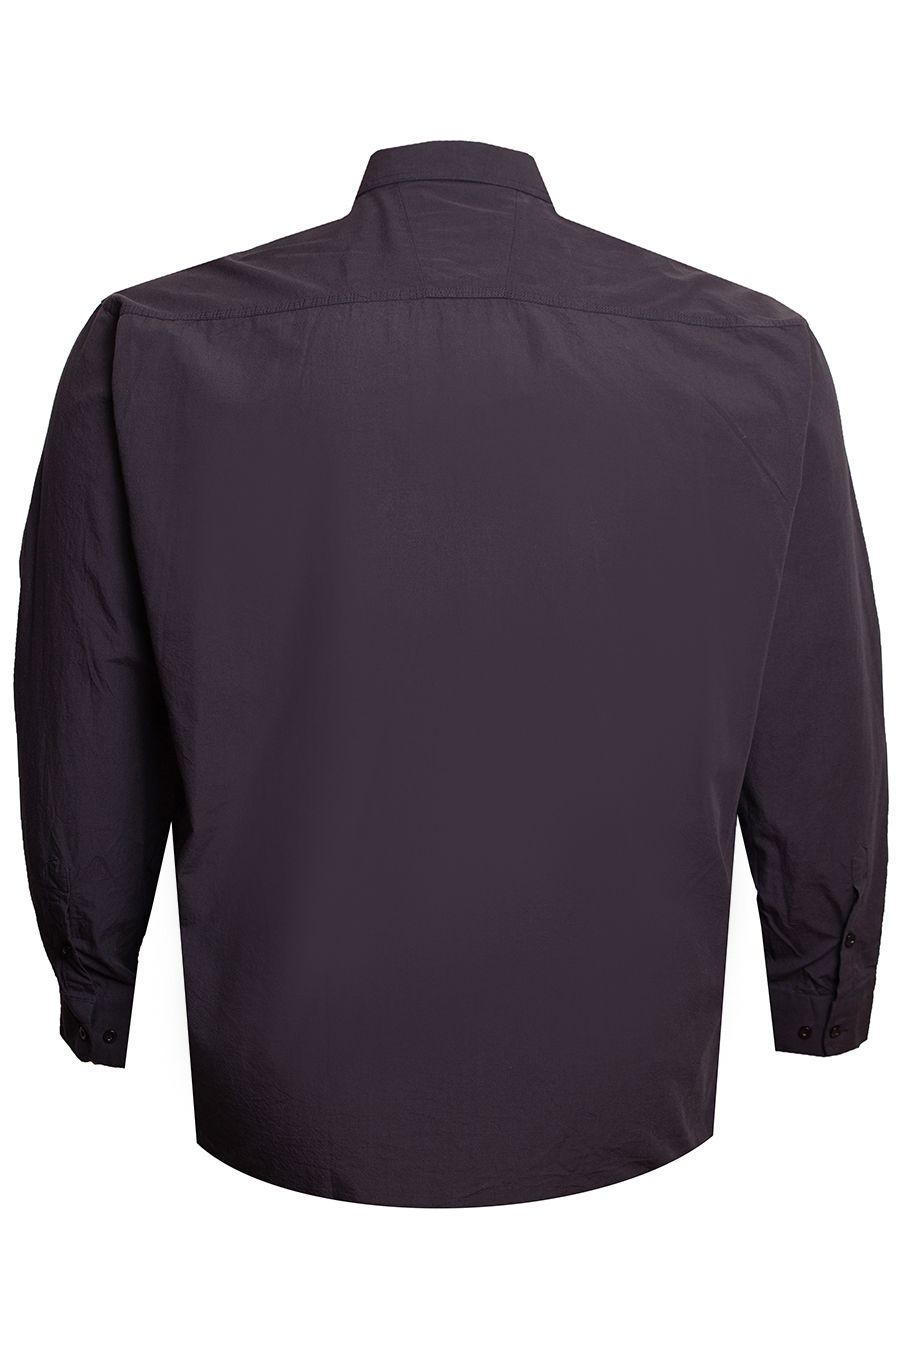 Рубашка Birindelli Чёрная большого размера